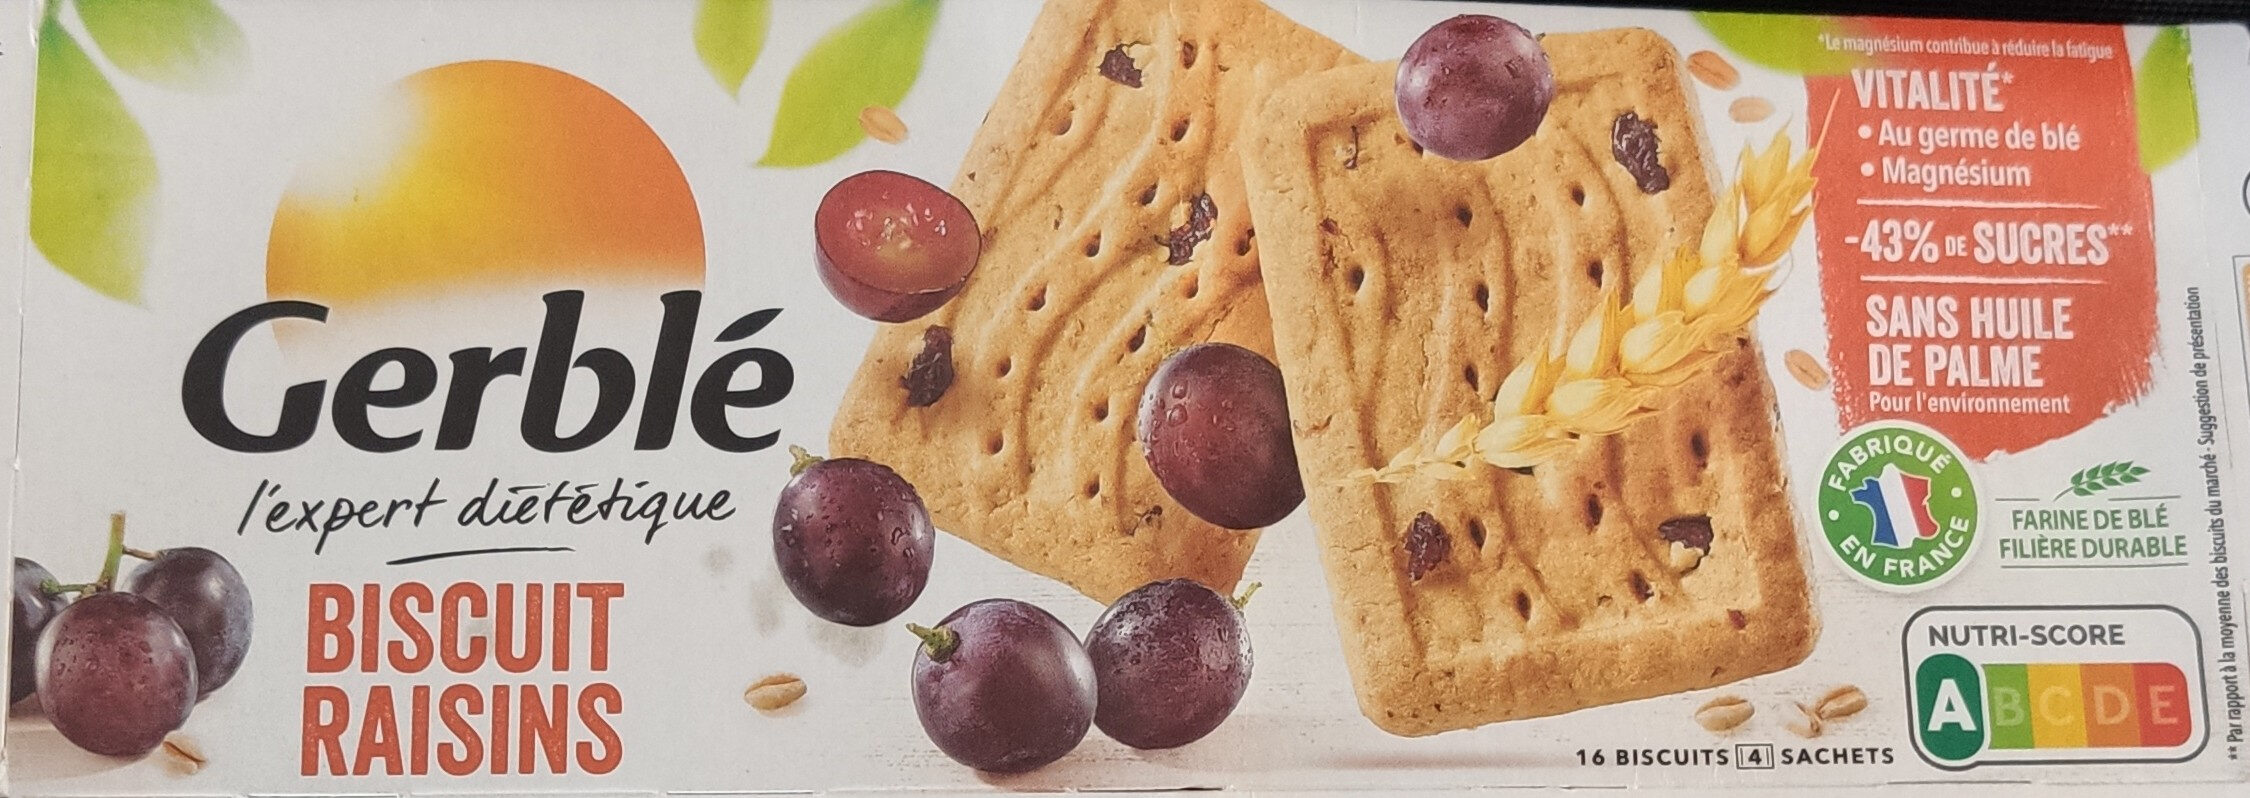 Biscuit raisins - Produit